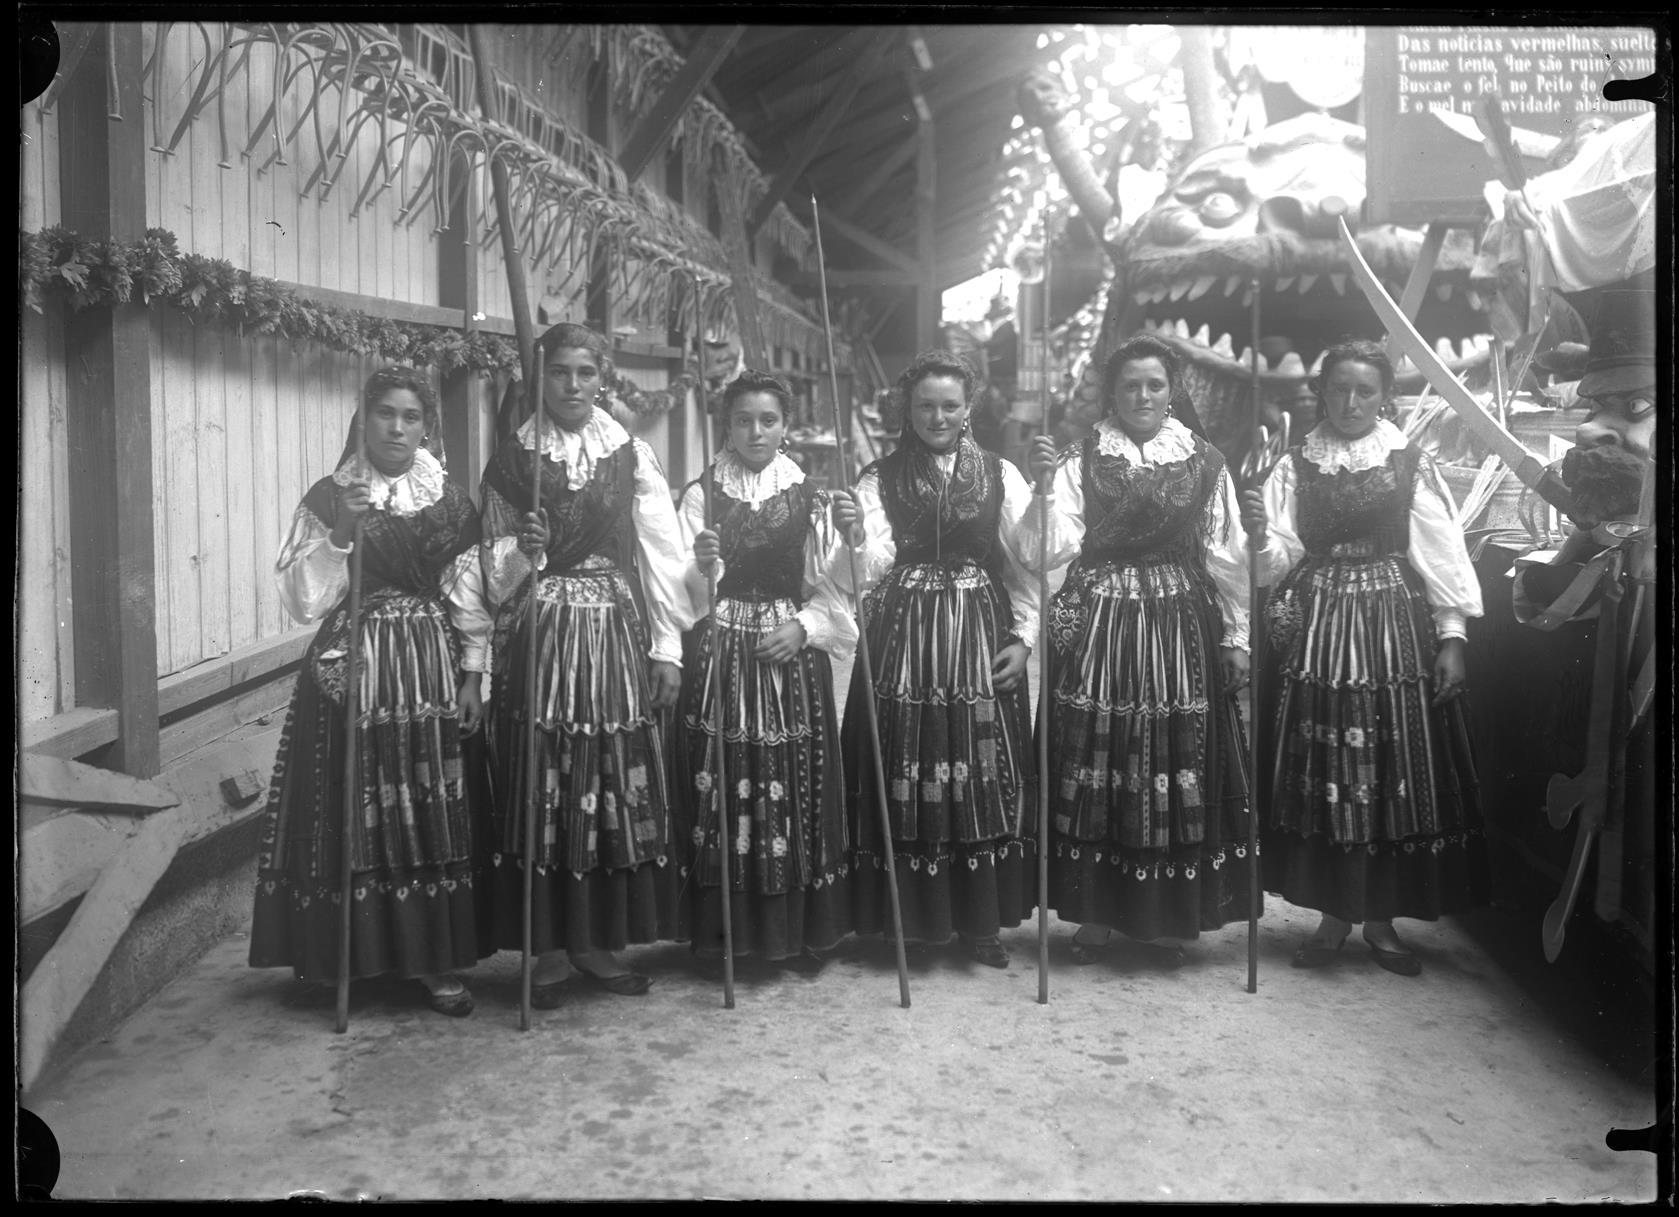 Carnaval de 1905 : grupo de mulheres junto aos carros alegóricos, no jardim do Palácio de Cristal